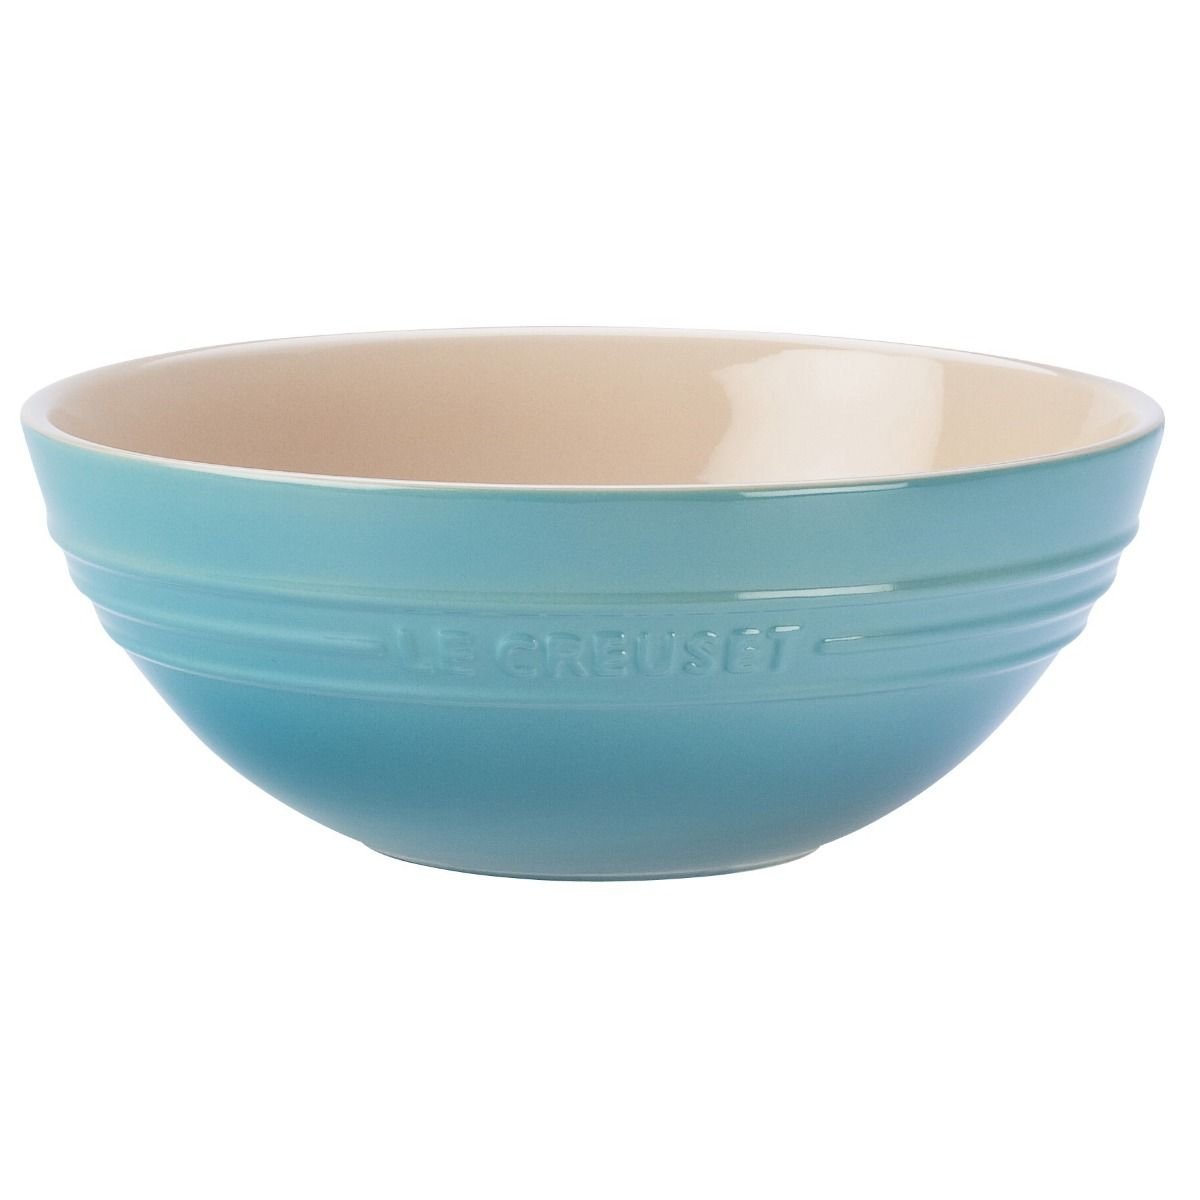 Le Creuset ® 5-Piece Caribbean Blue Ceramic Bakeware Set